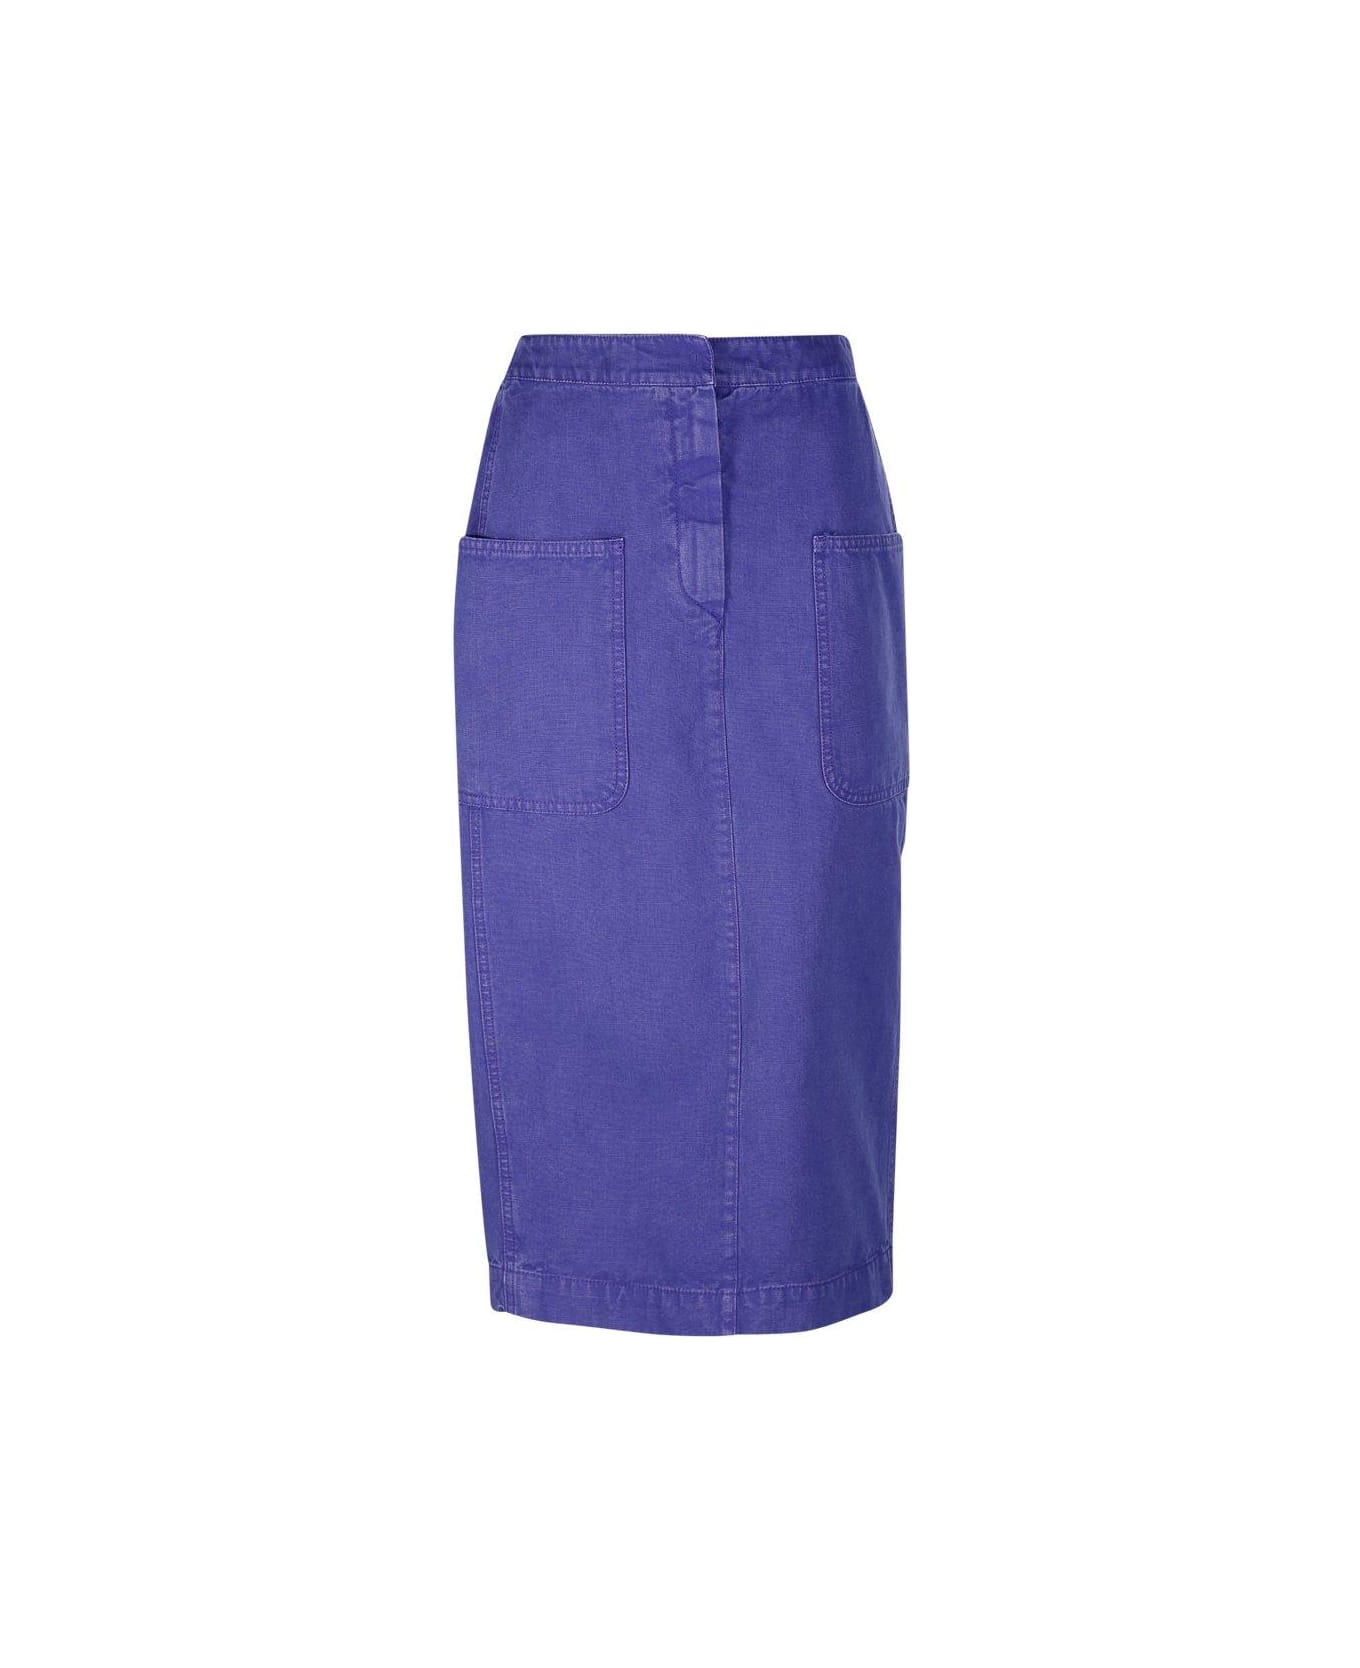 Max Mara Mid Waist Pencil Skirt - Purple